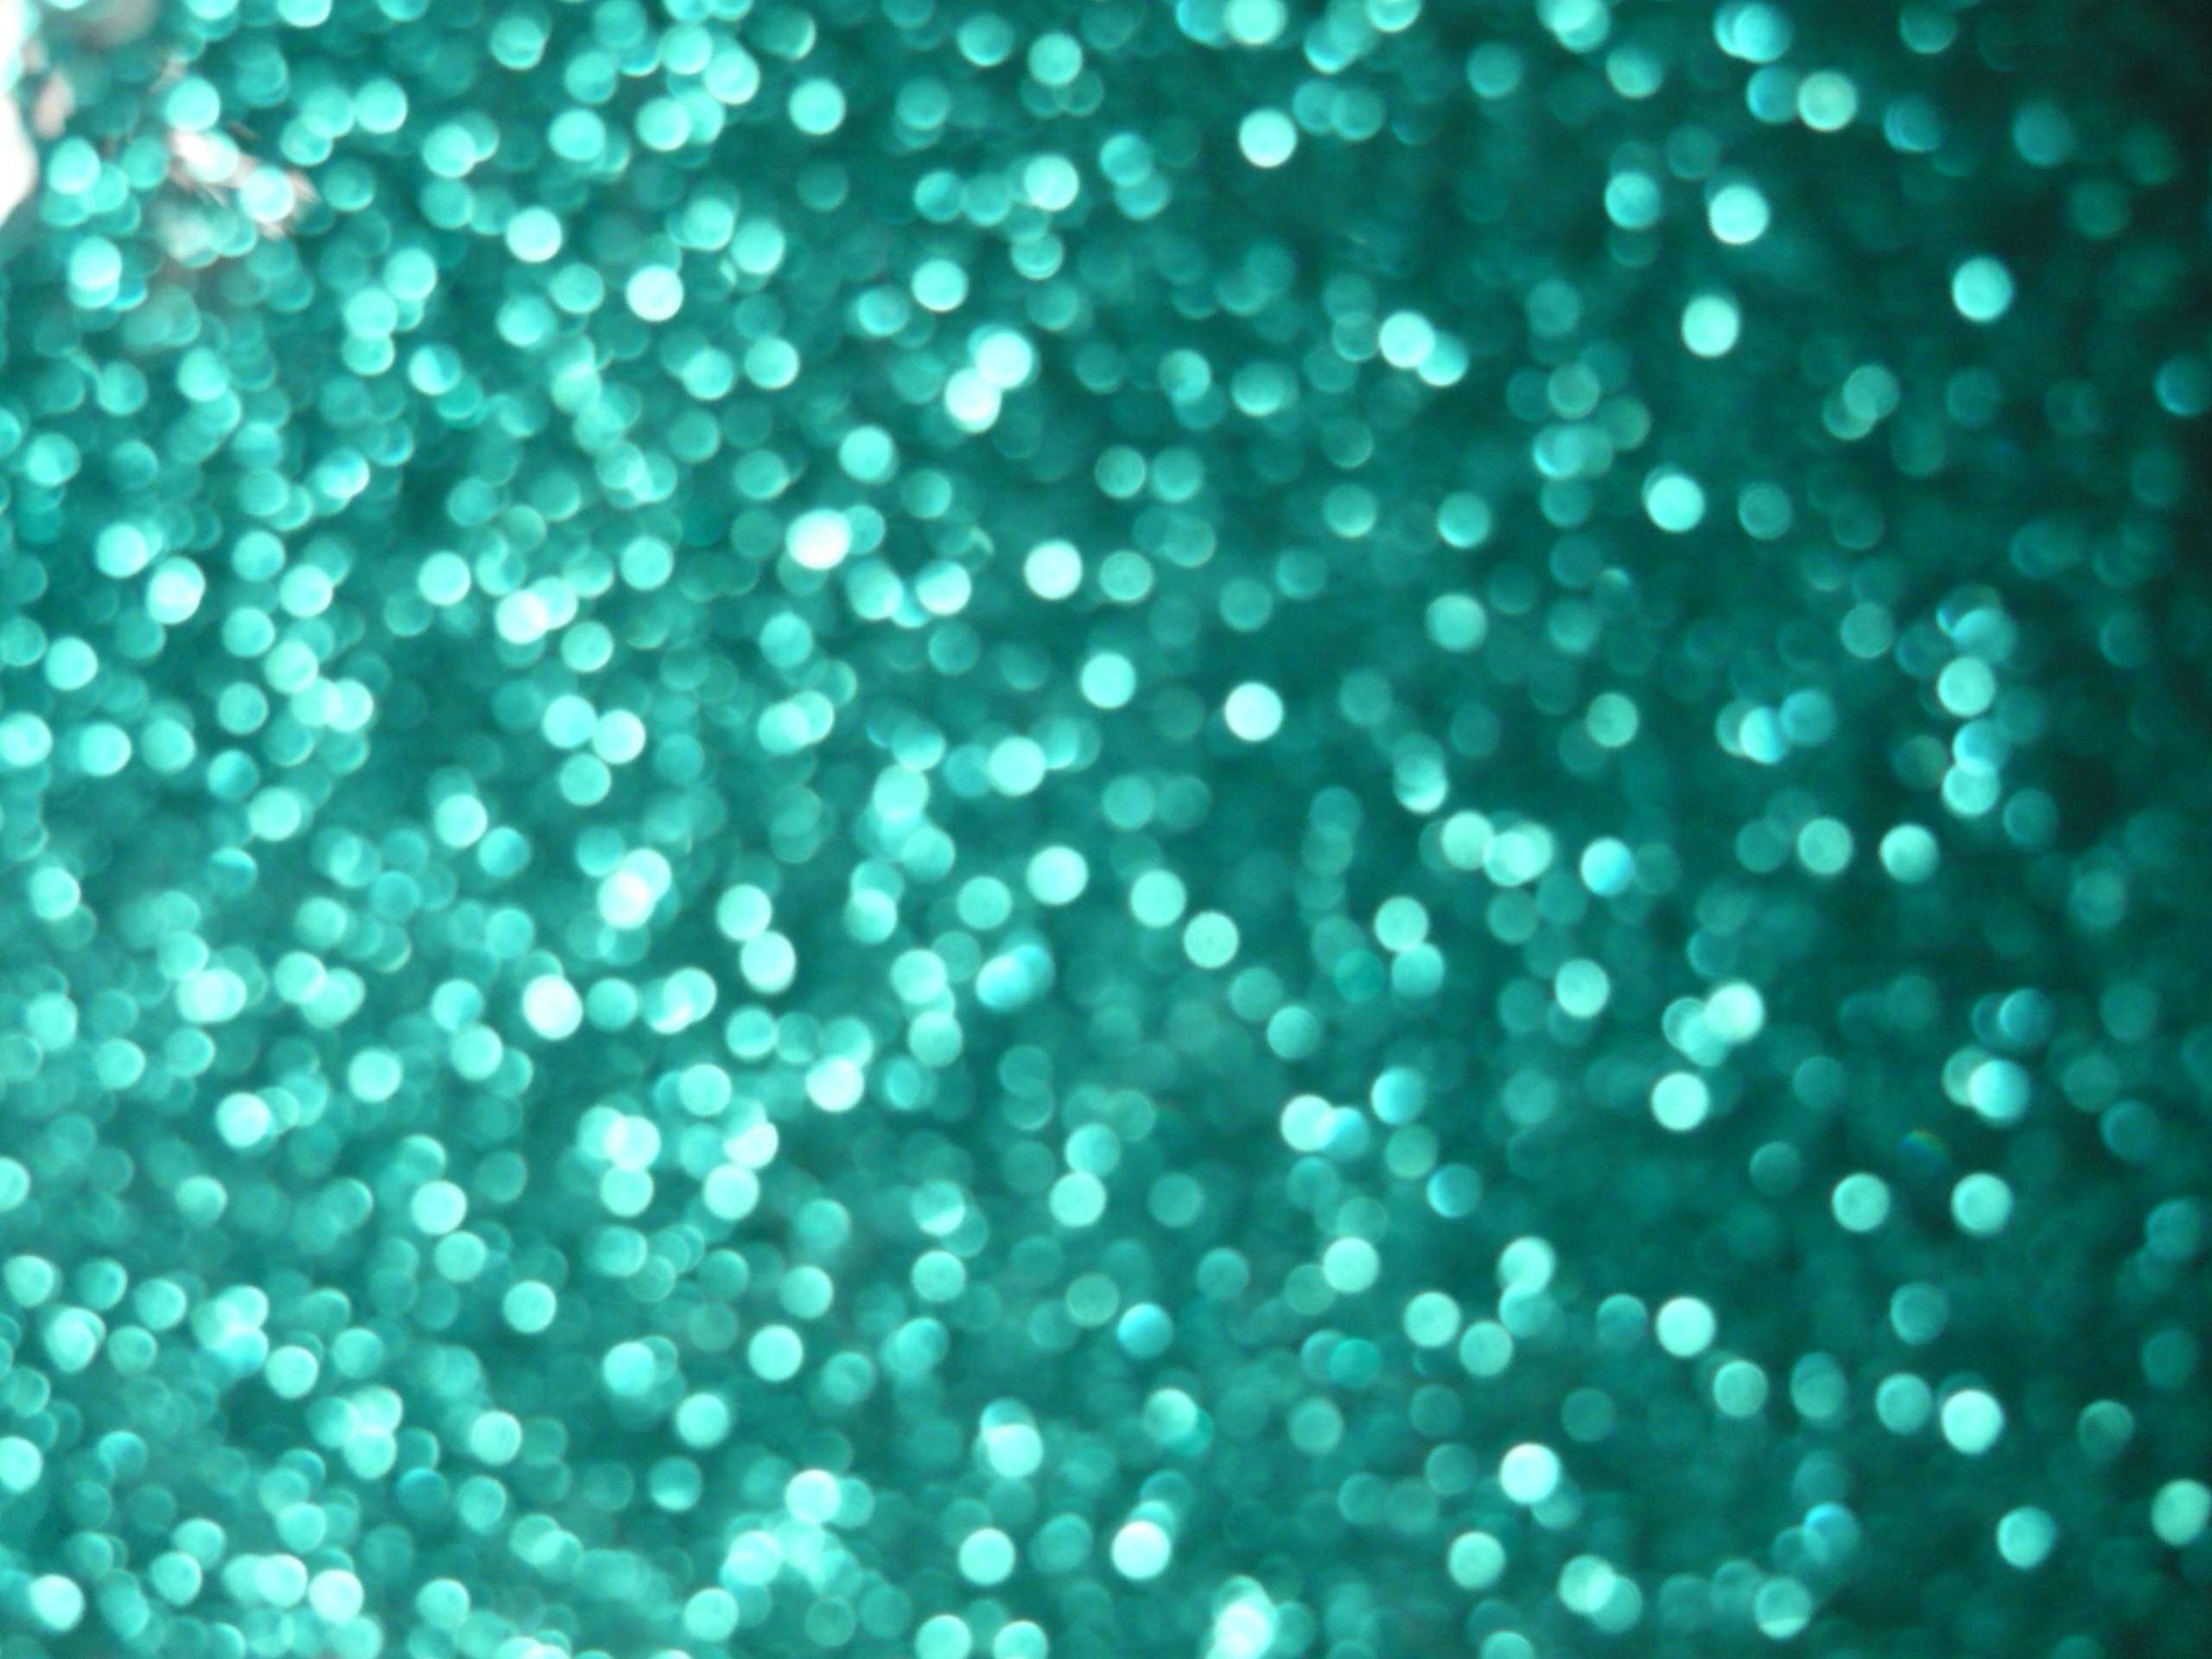 Glittery Blue Green 310234 Image HD Wallpaper. Wallfoy